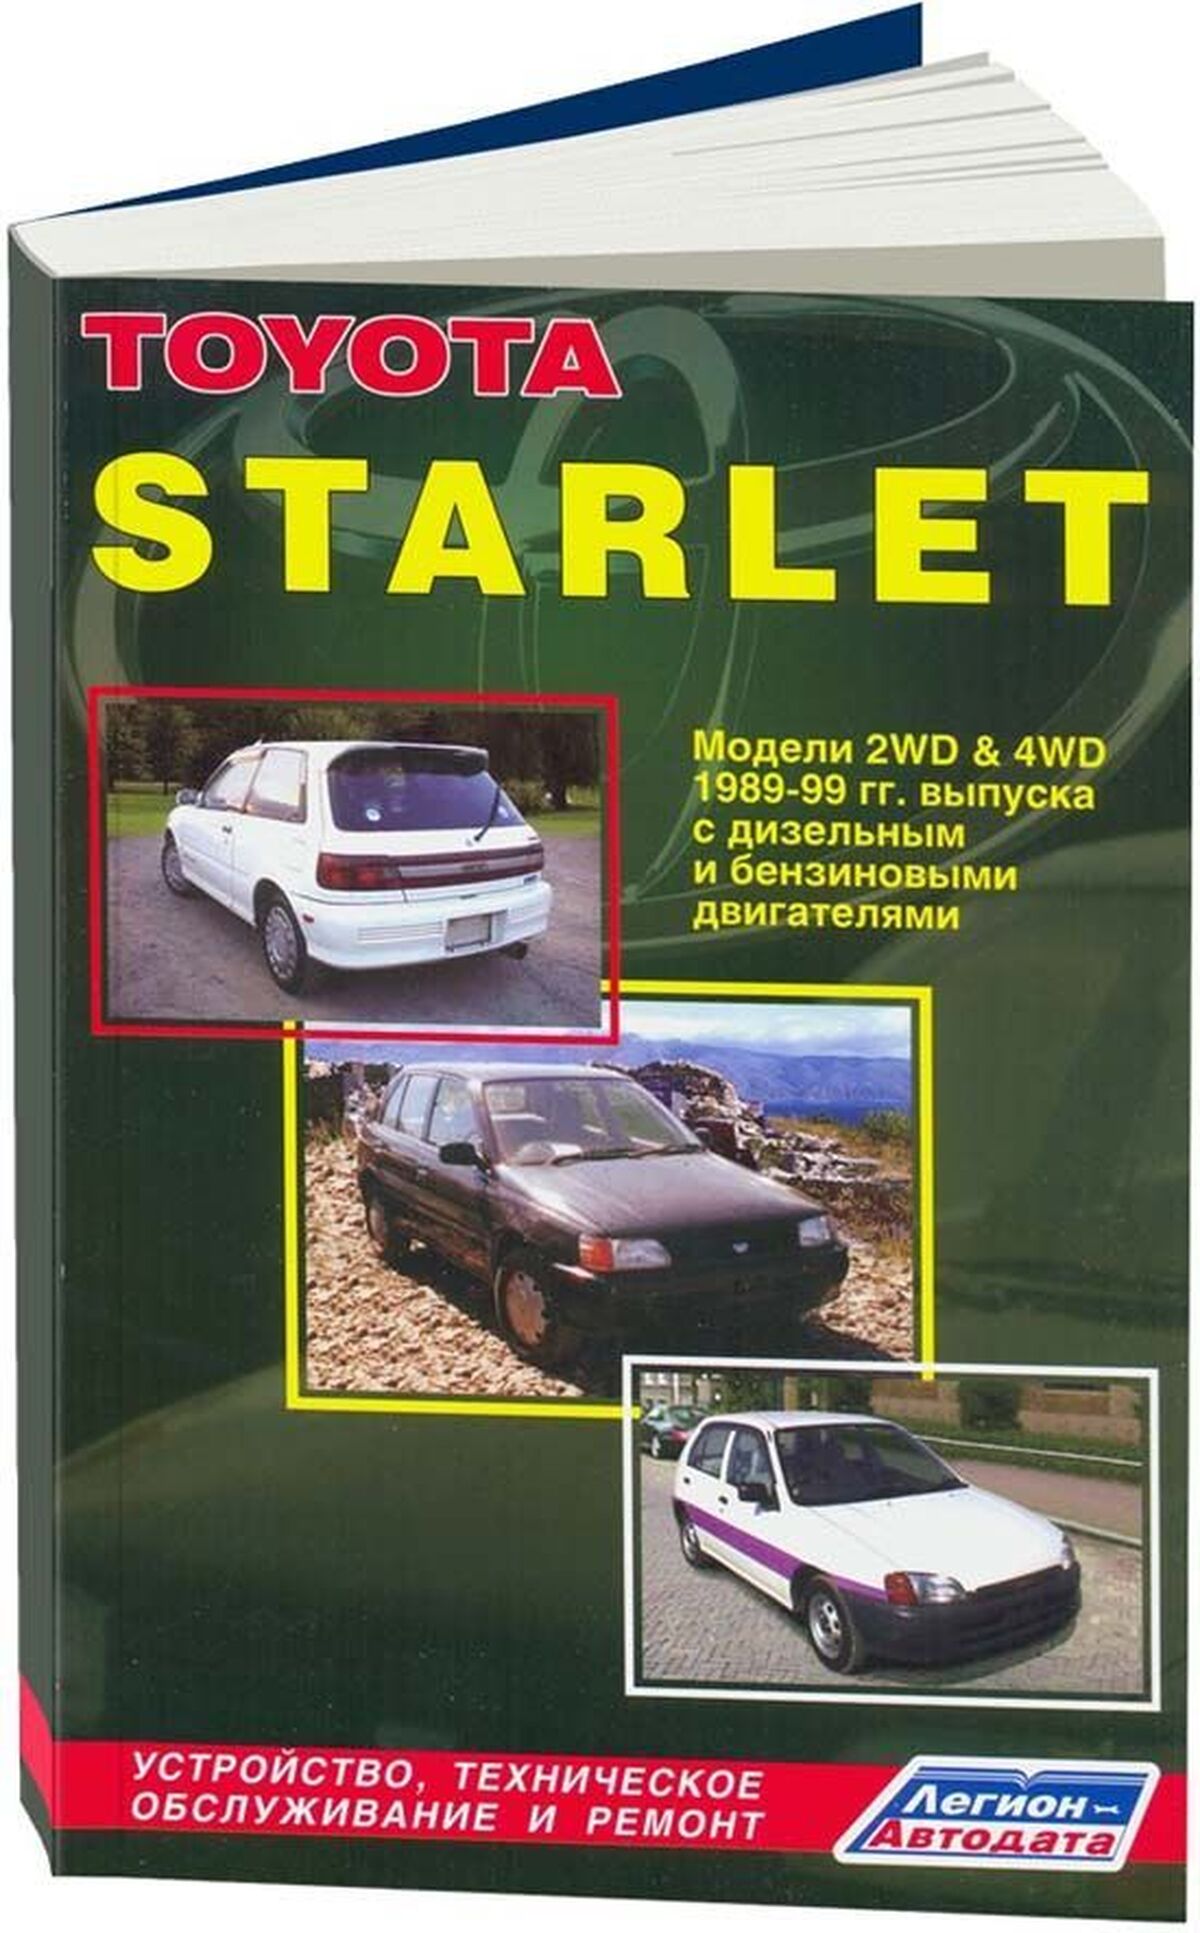 Книга: TOYOTA STARLET (б , д) 1989-1999 г.в., рем., экспл., то | Легион-Aвтодата